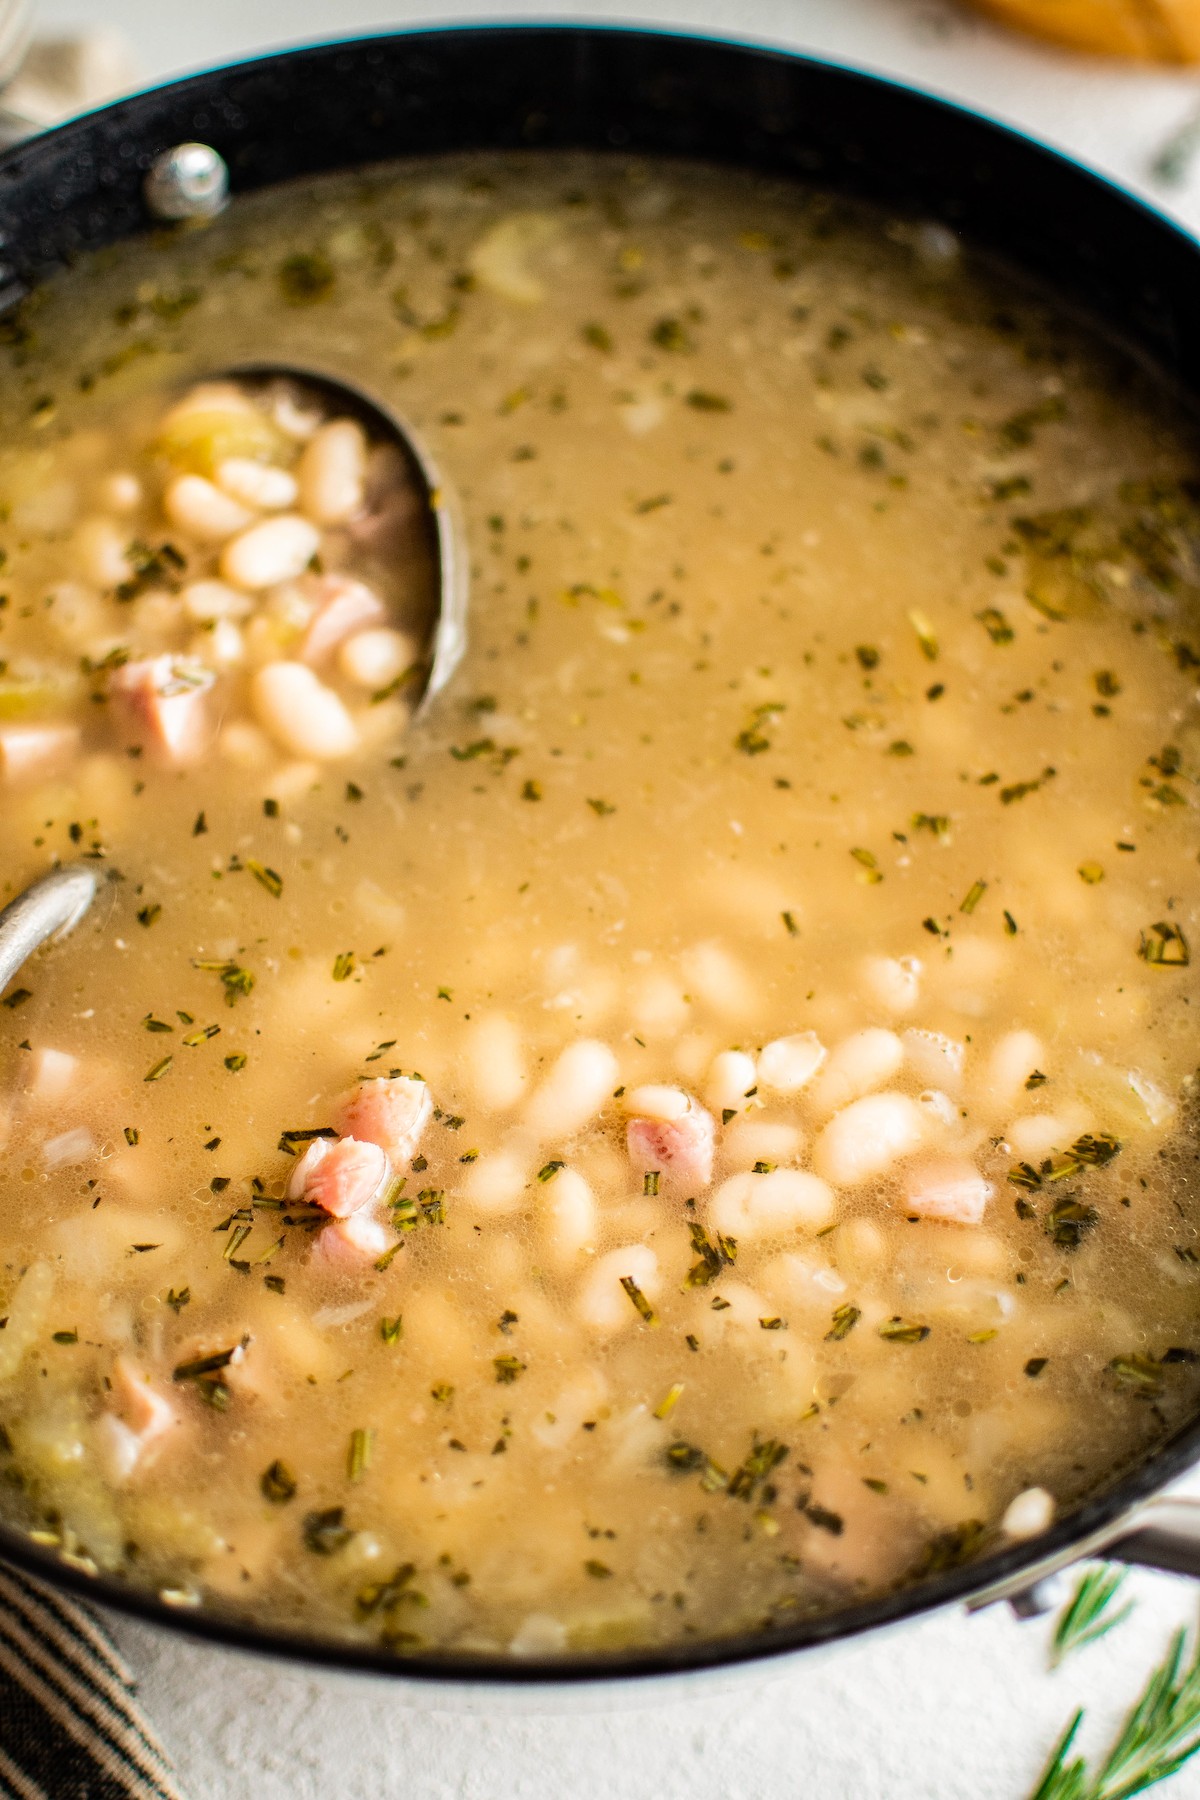 Ladle in a pot of bean soup.